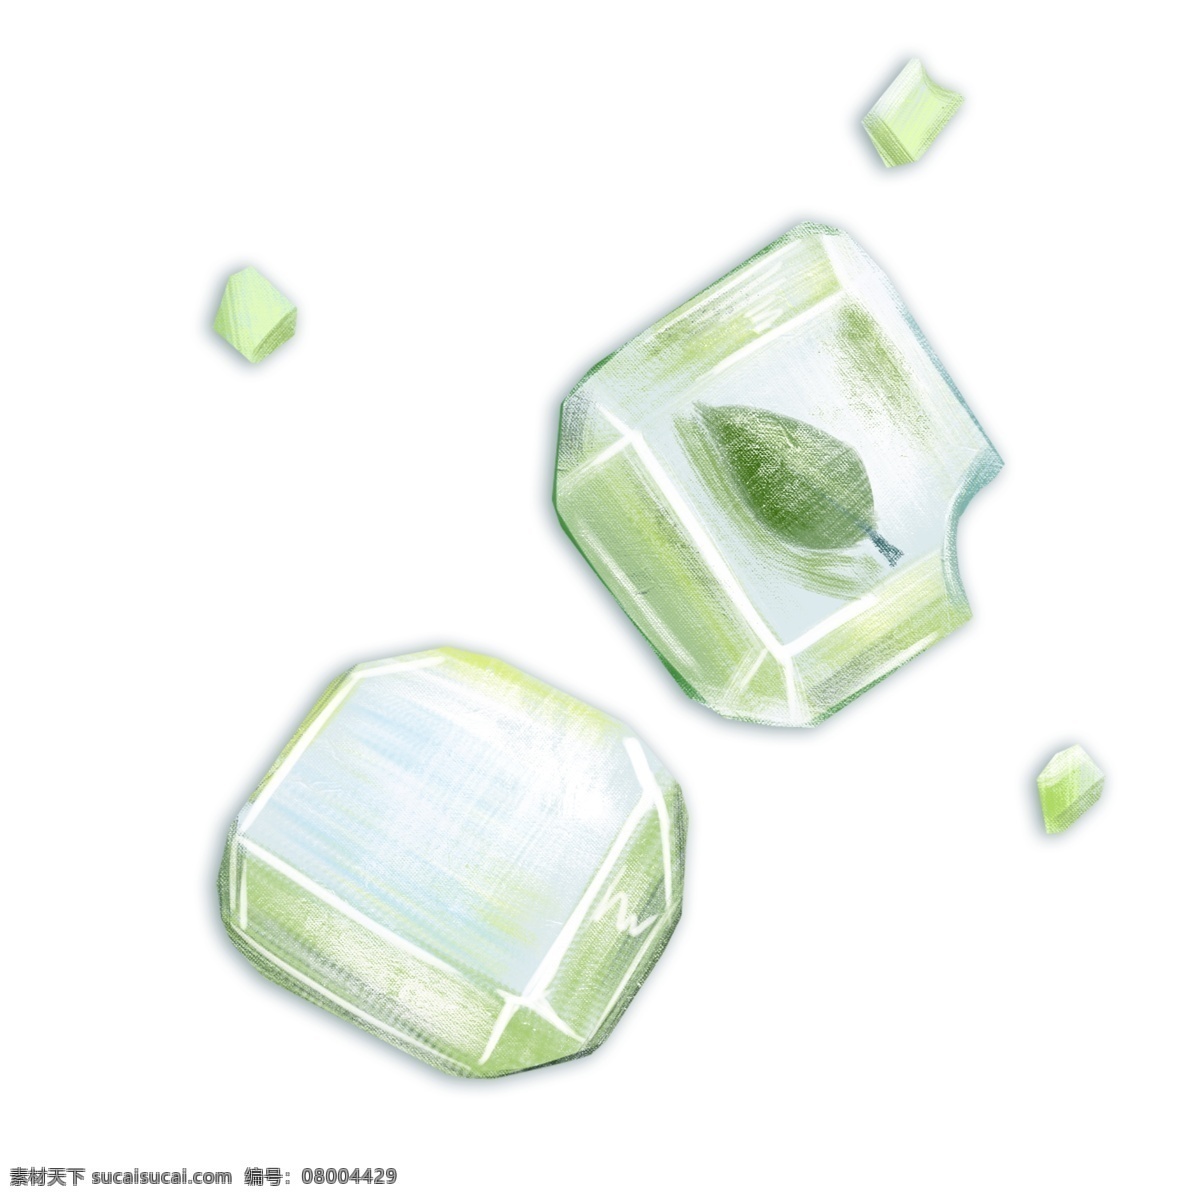 绿色 冰块 叶子 插图 茶叶 卡通冰块 绿色冰块 两块冰块 植物 冰块插图 创意冰块